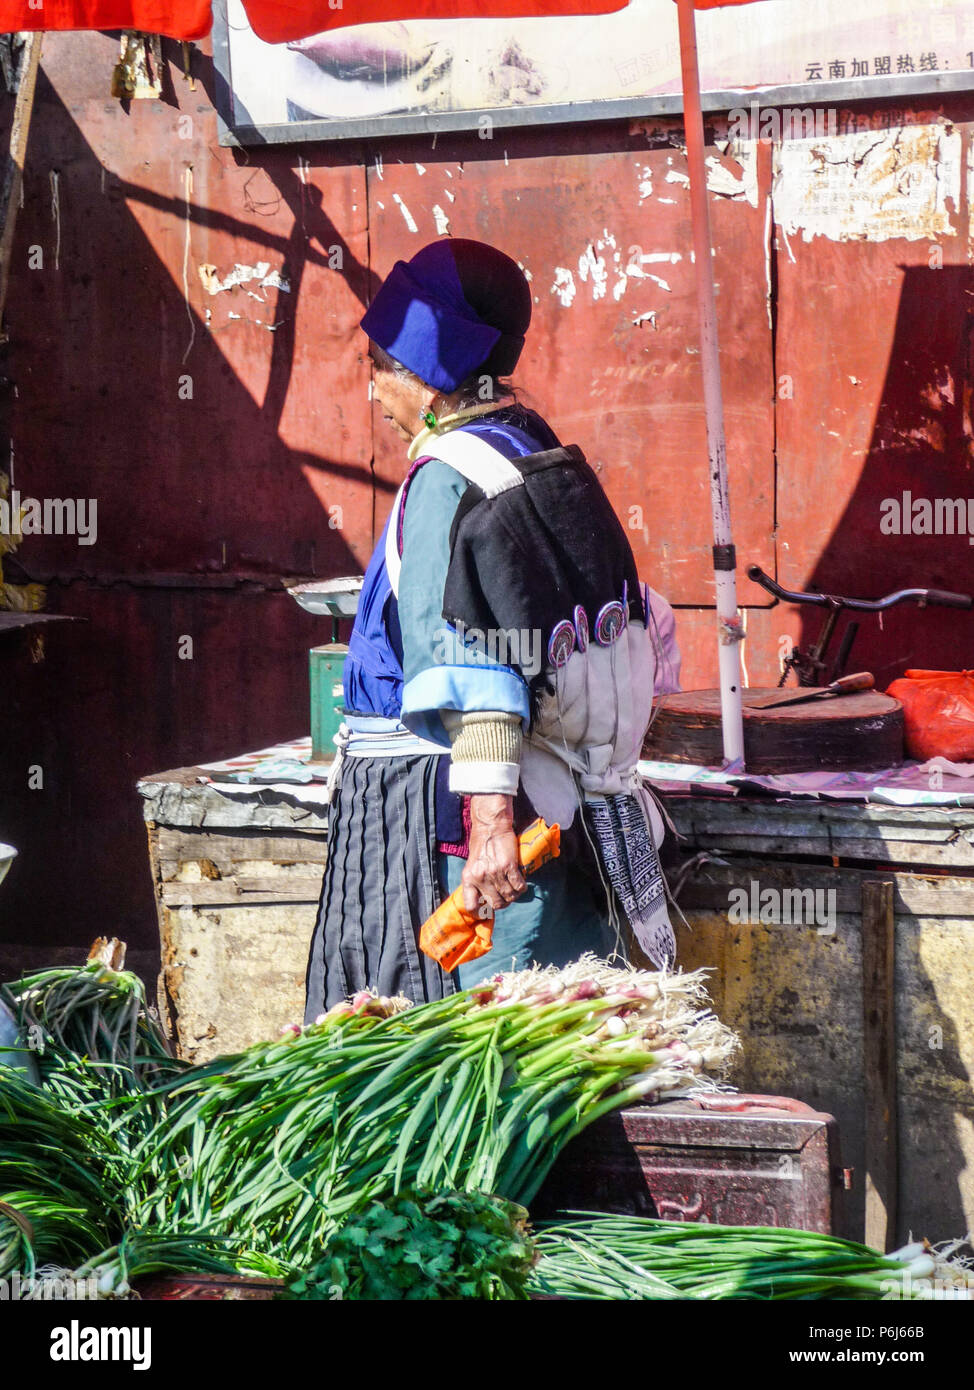 Lijiang, Chine - Avril 2015 : femme mariée de la minorité Naxi chinois portant des vêtements traditionnels alors que l'achat de nourriture au marché local Banque D'Images